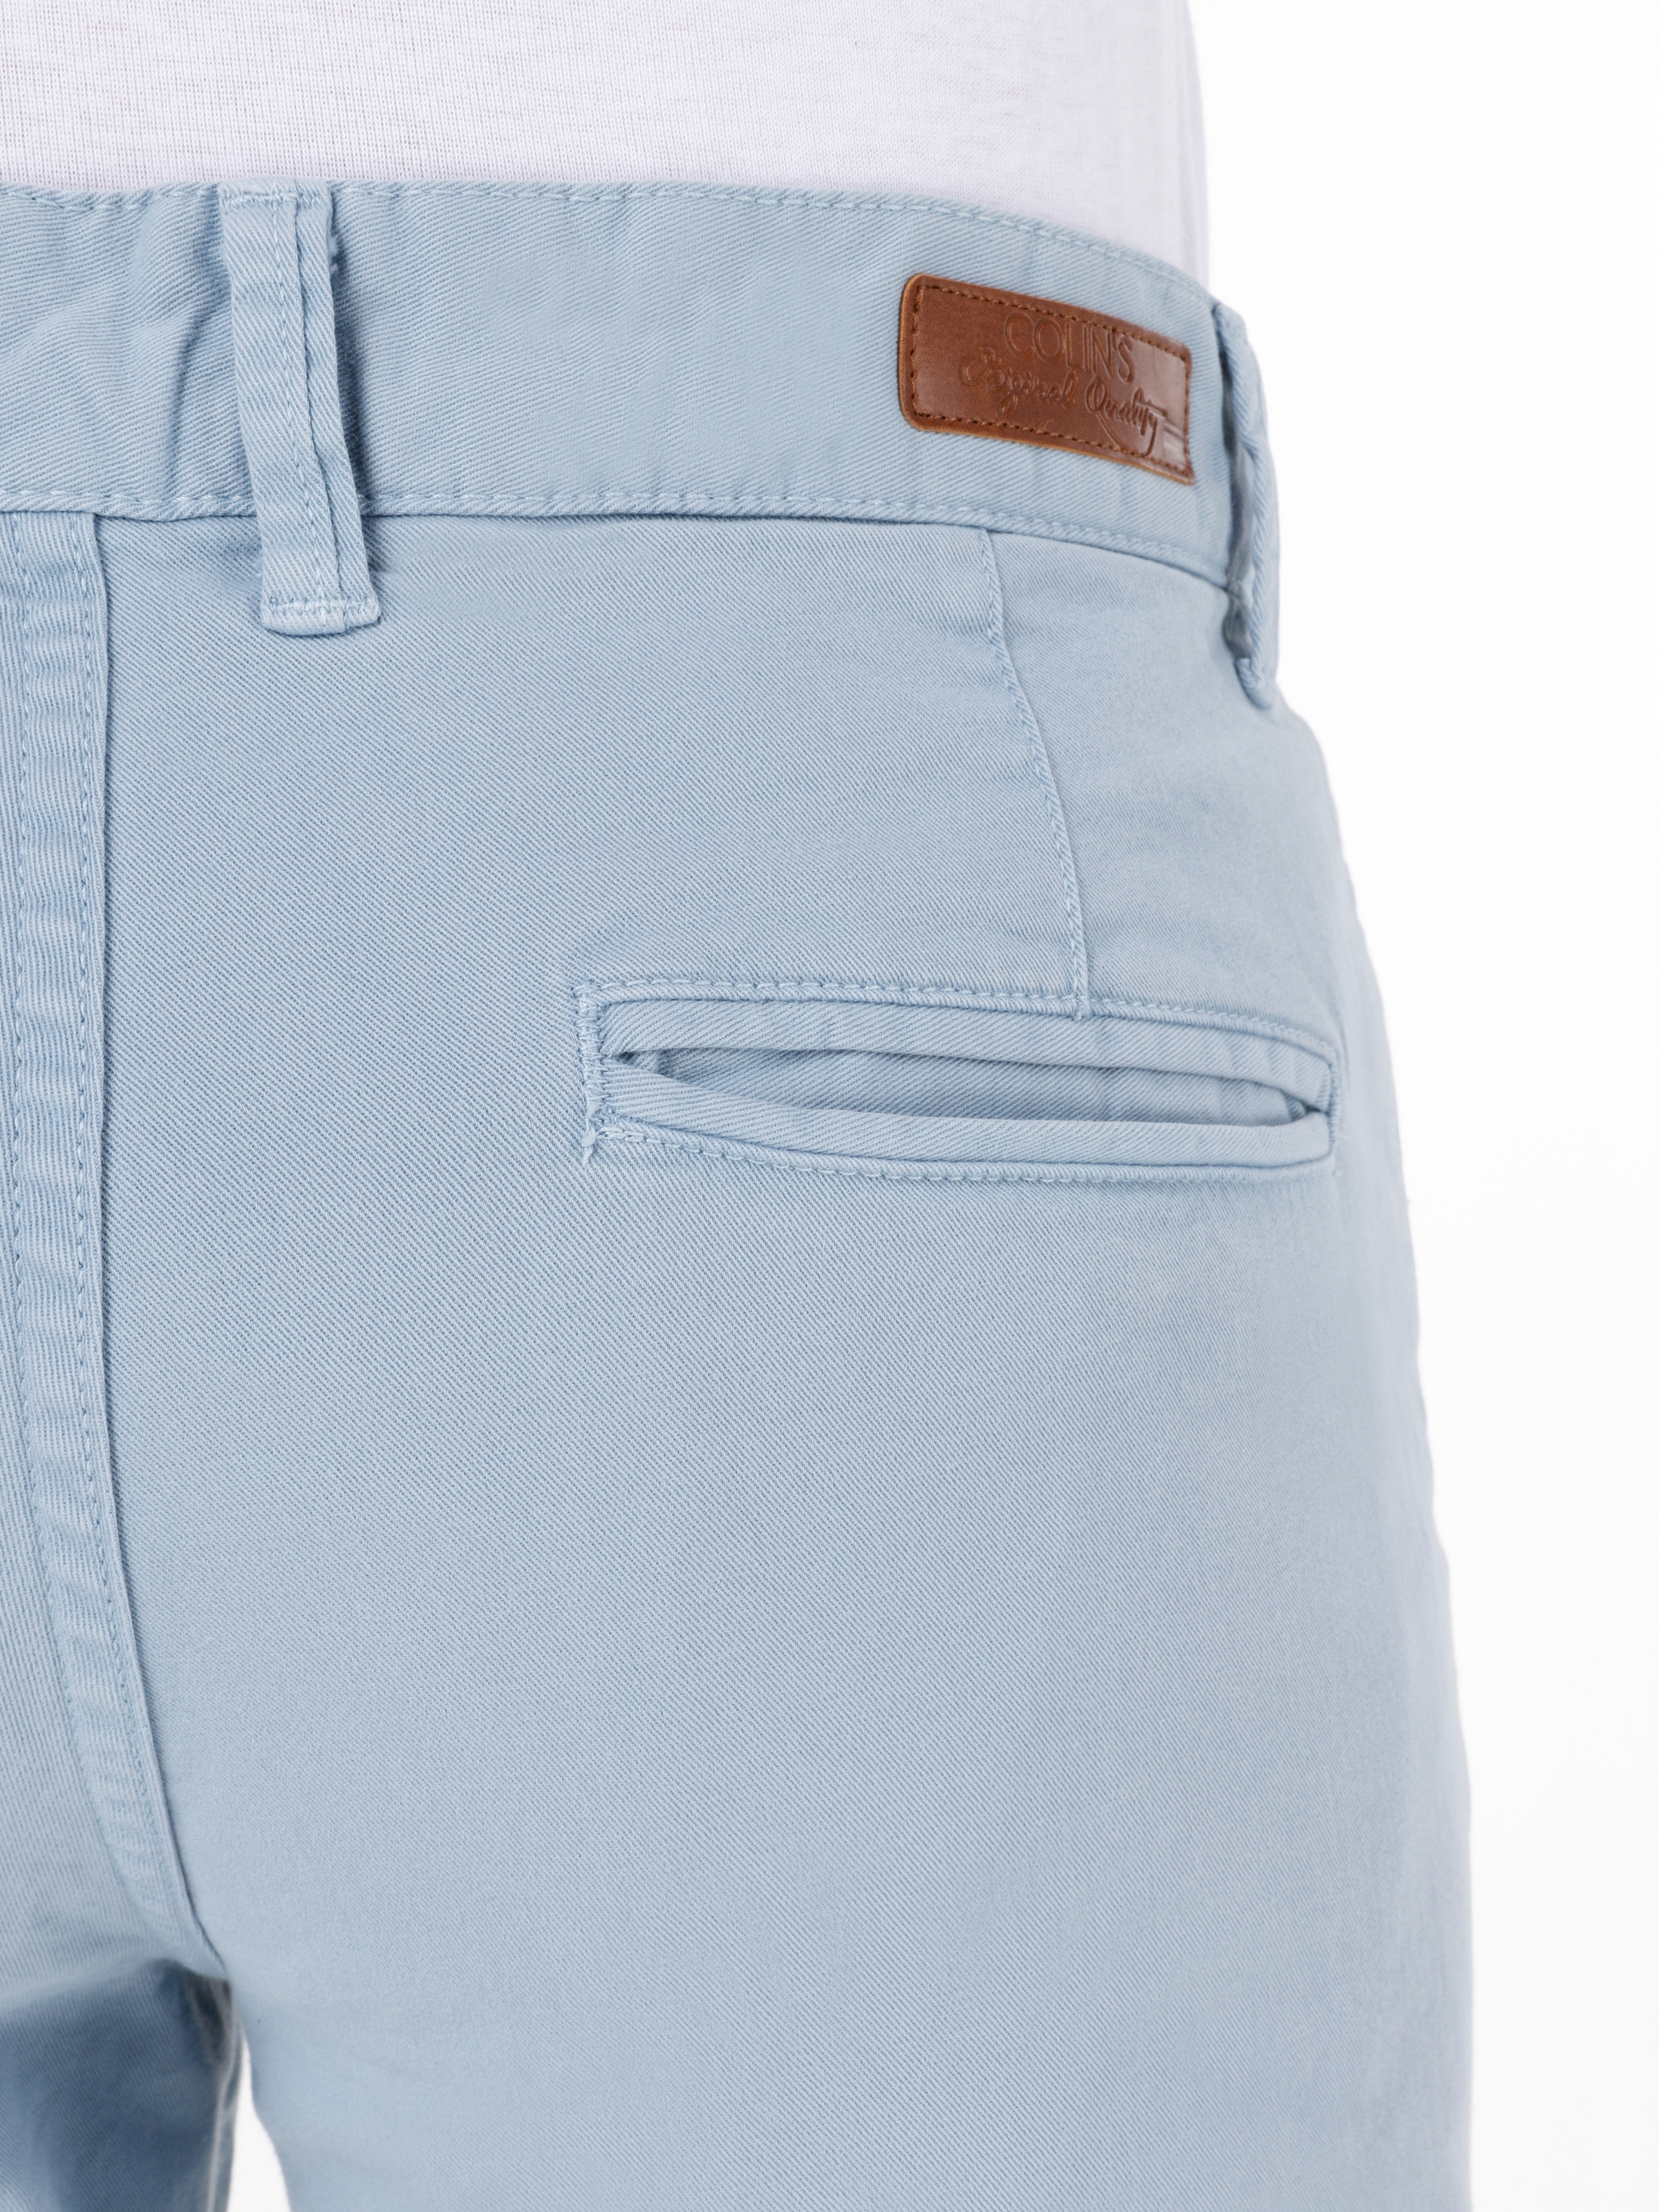 Afficher les détails de Pantalon Bleu Clair Pour Homme, Coupe Slim, Taille Moyenne, Jambe Droite